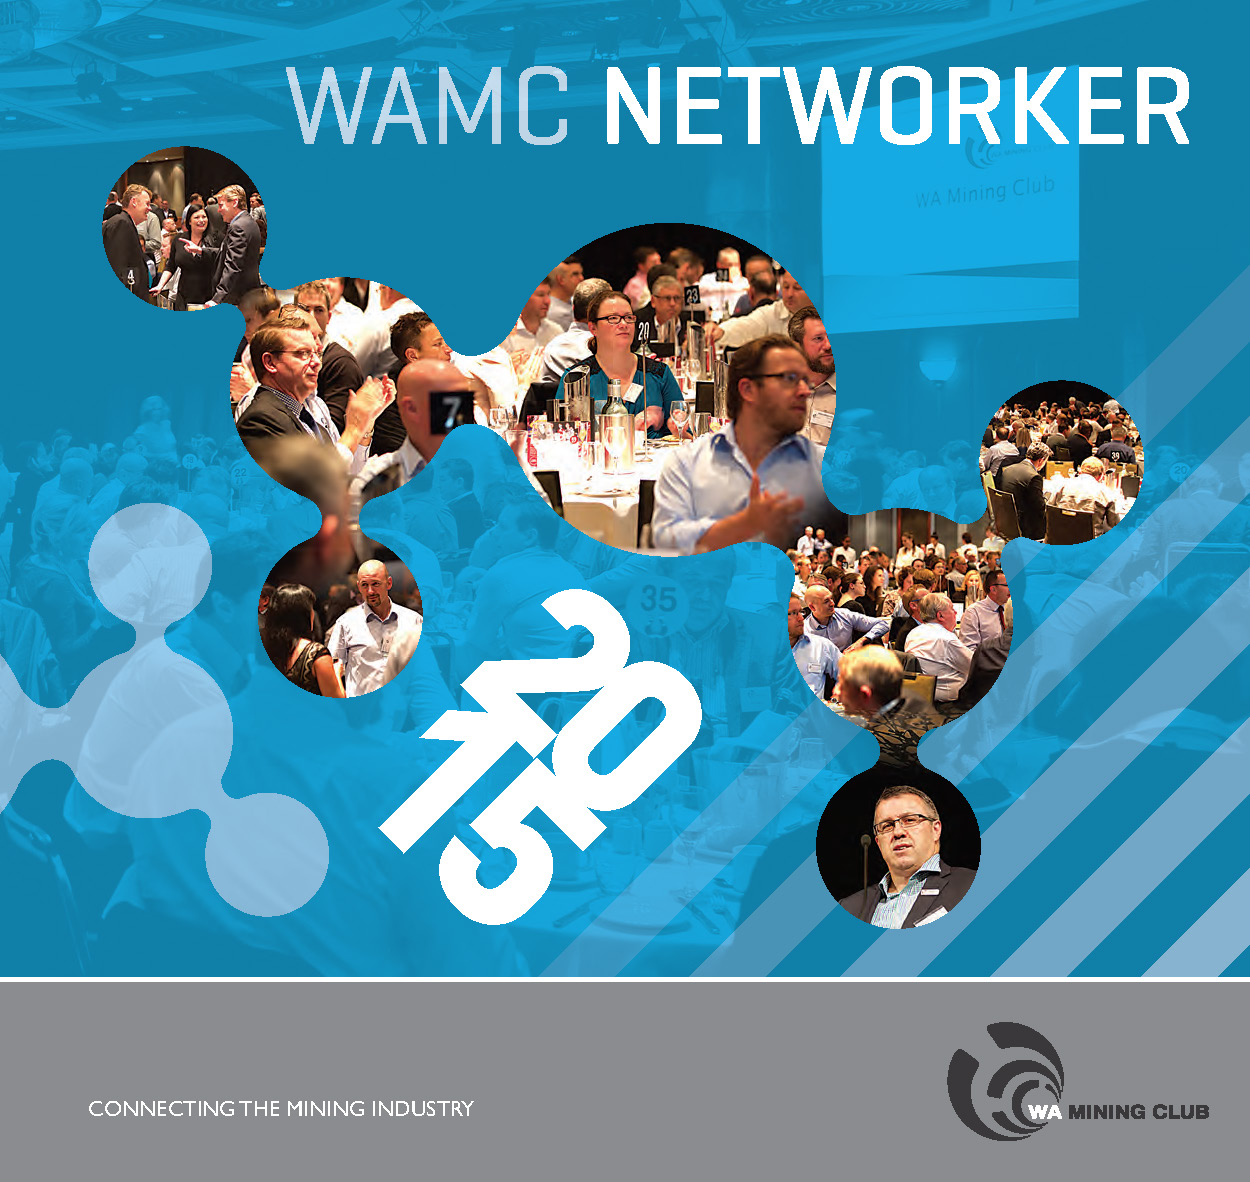 wamc networker 2013